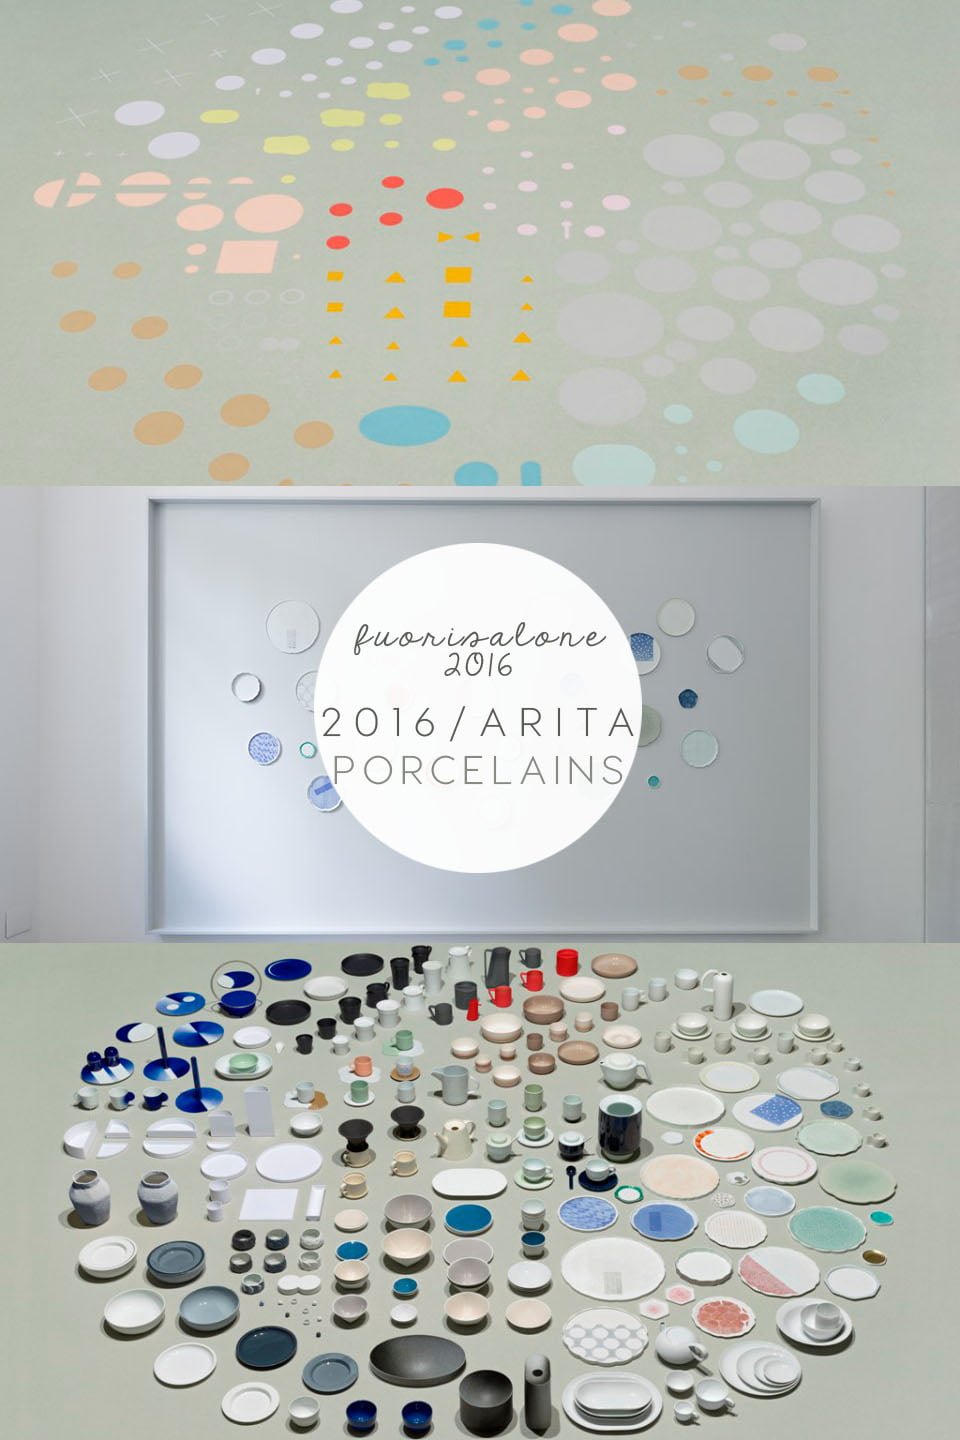 arita porcelains, arita, japanese porcelain, arita ceramics, milan design week 2016, fuorisalone 2016